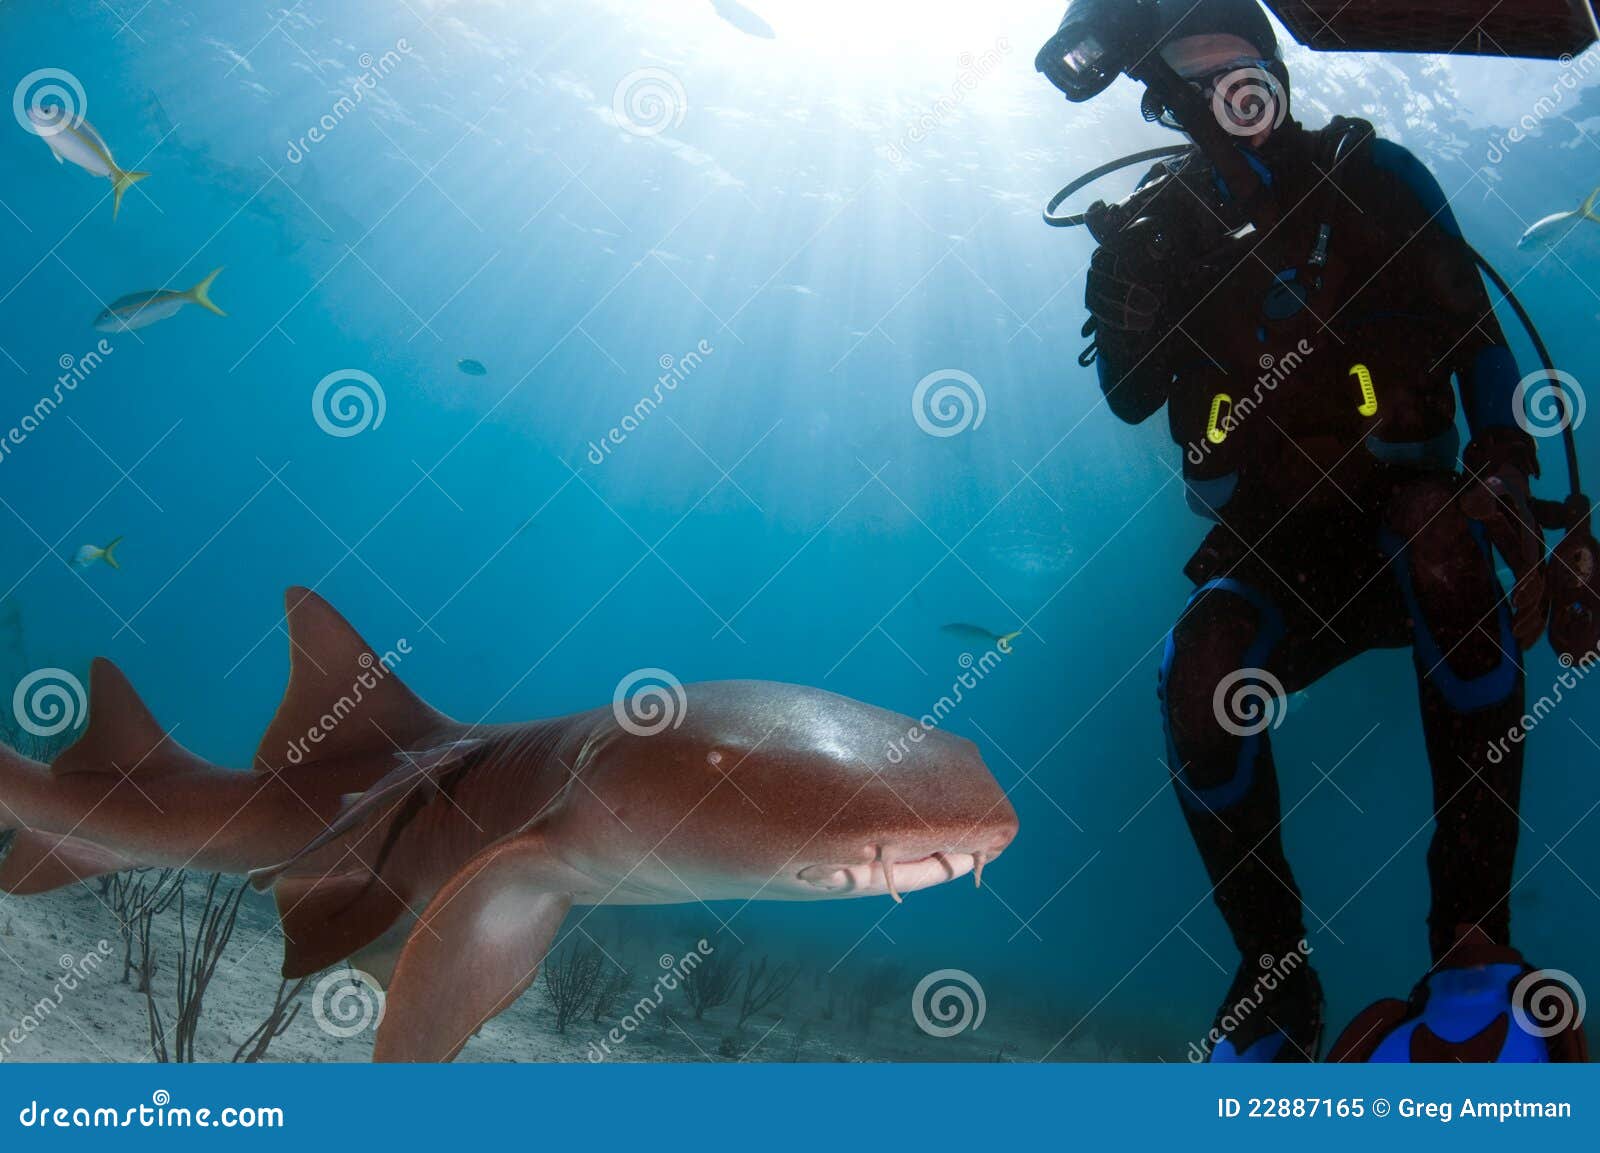 渔网成“死亡牢笼” 英国摄影师拍摄潜水员解救被困鲨鱼